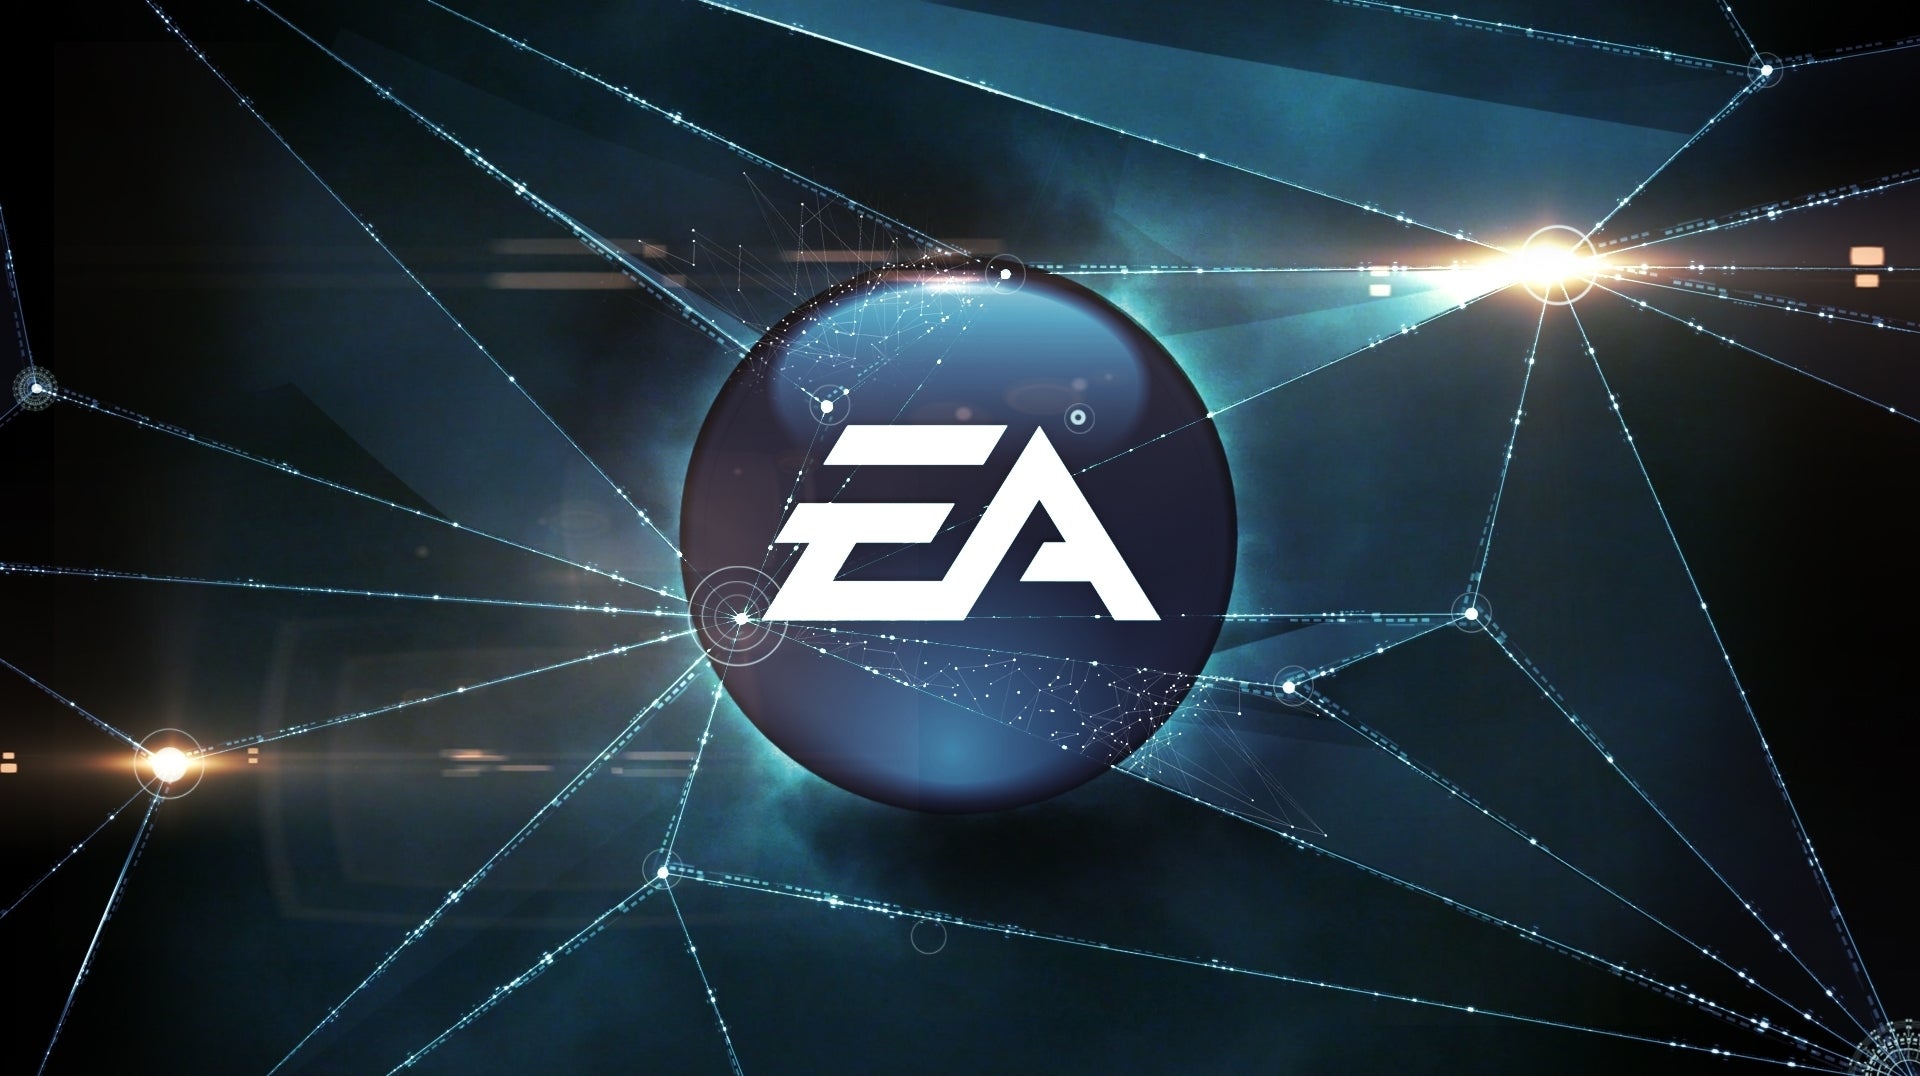 Immagine di EA sotto attacco hacker: rubati 780GB di dati e i codici sorgente di FIFA 21 e Frostbite Engine